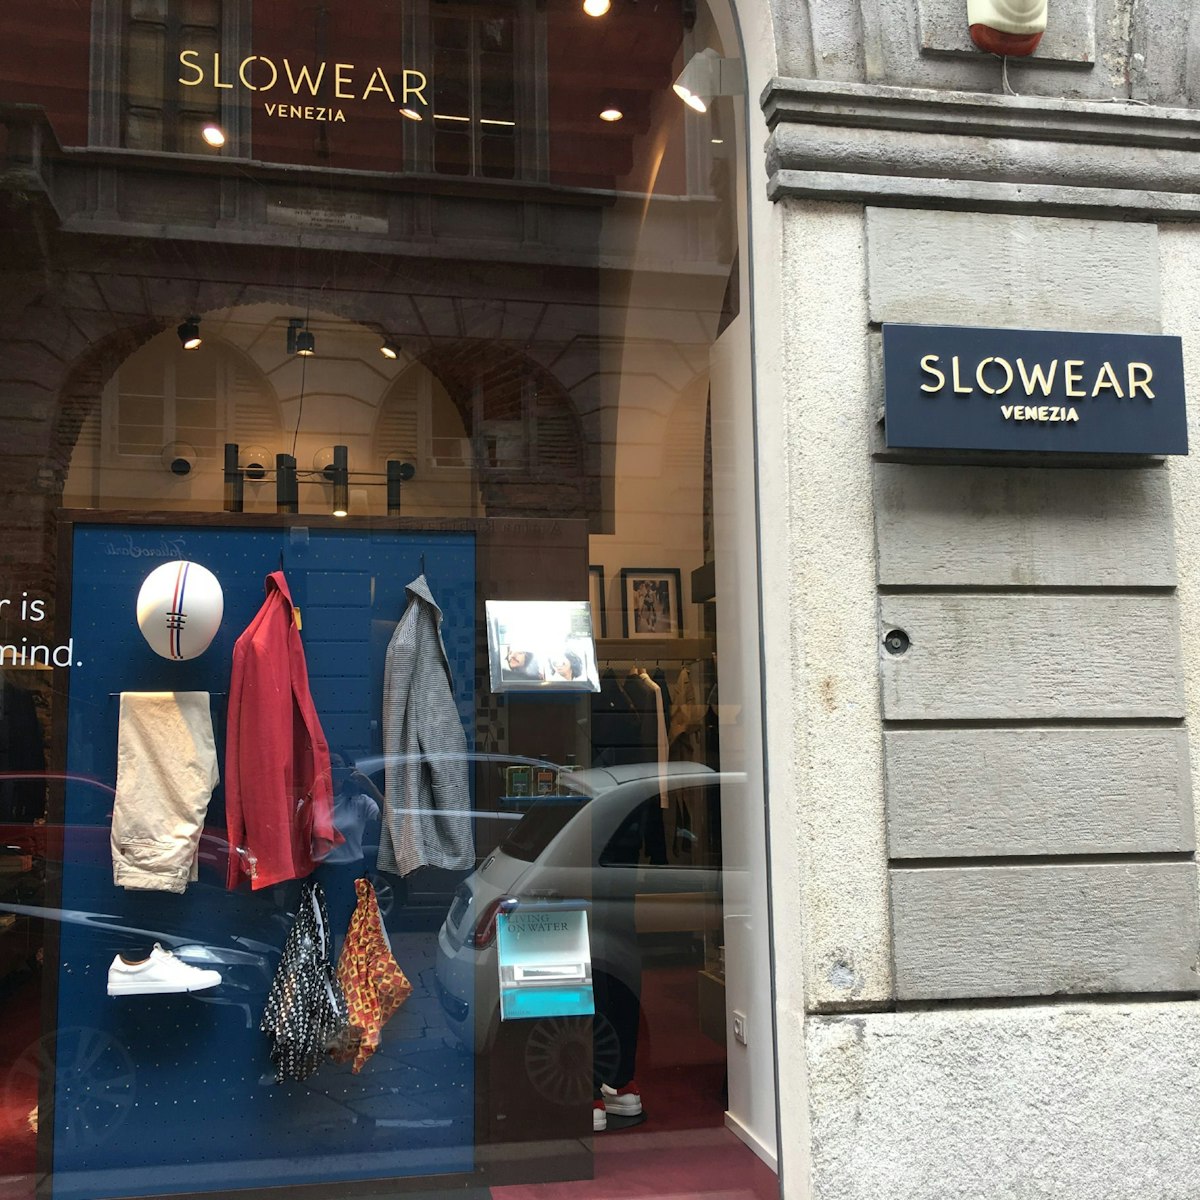 Outside The Slowear Store